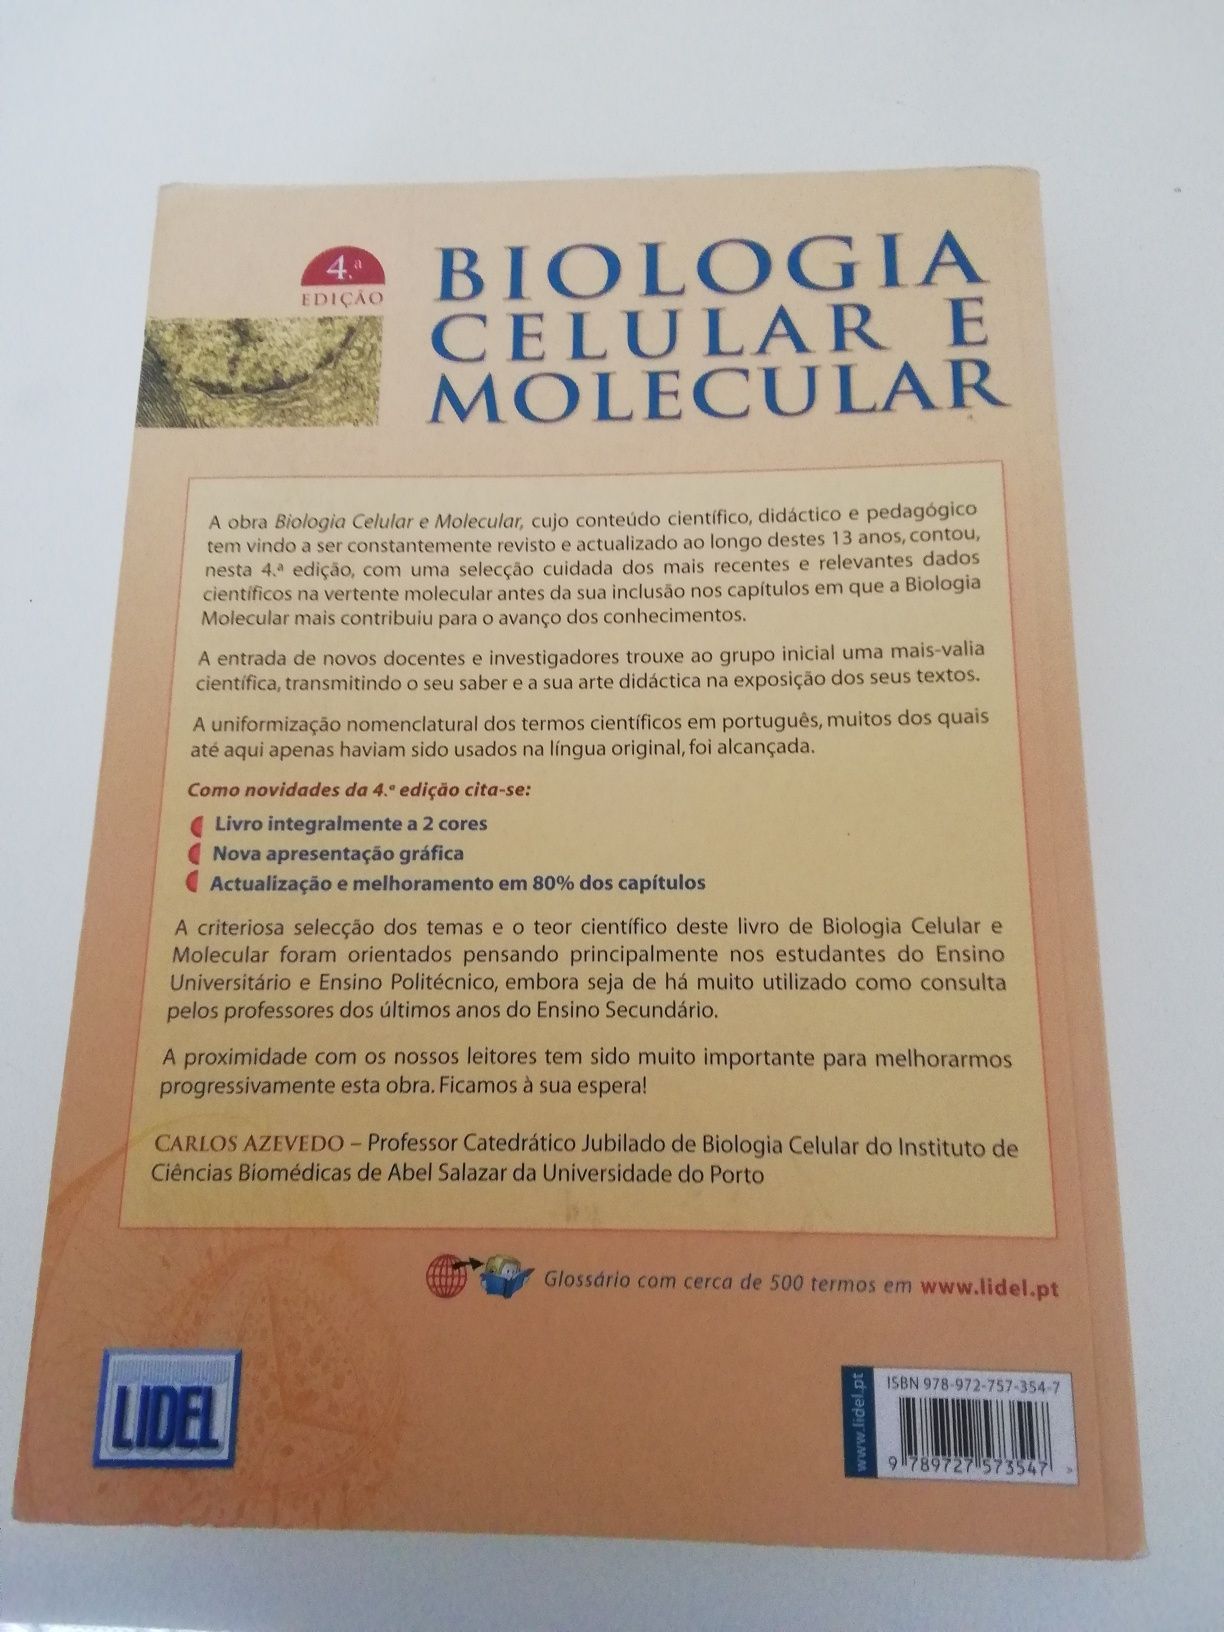 Livro Biologia Celular e Molecular de Carlos Azevedo.